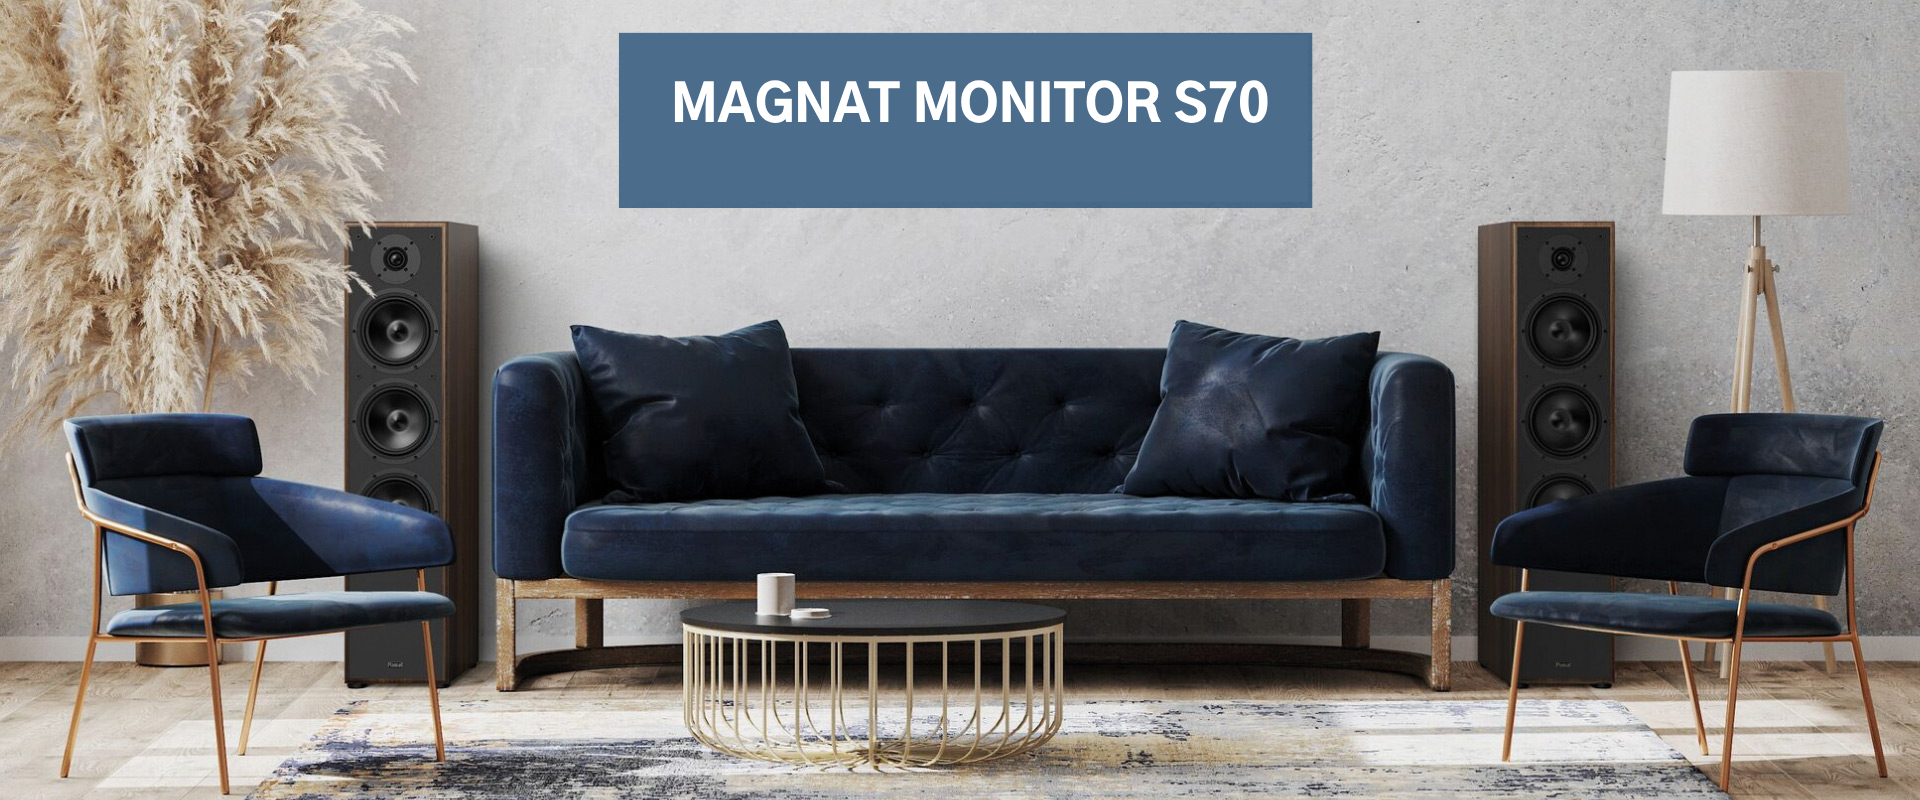 Magnat_MonitorS70_web1